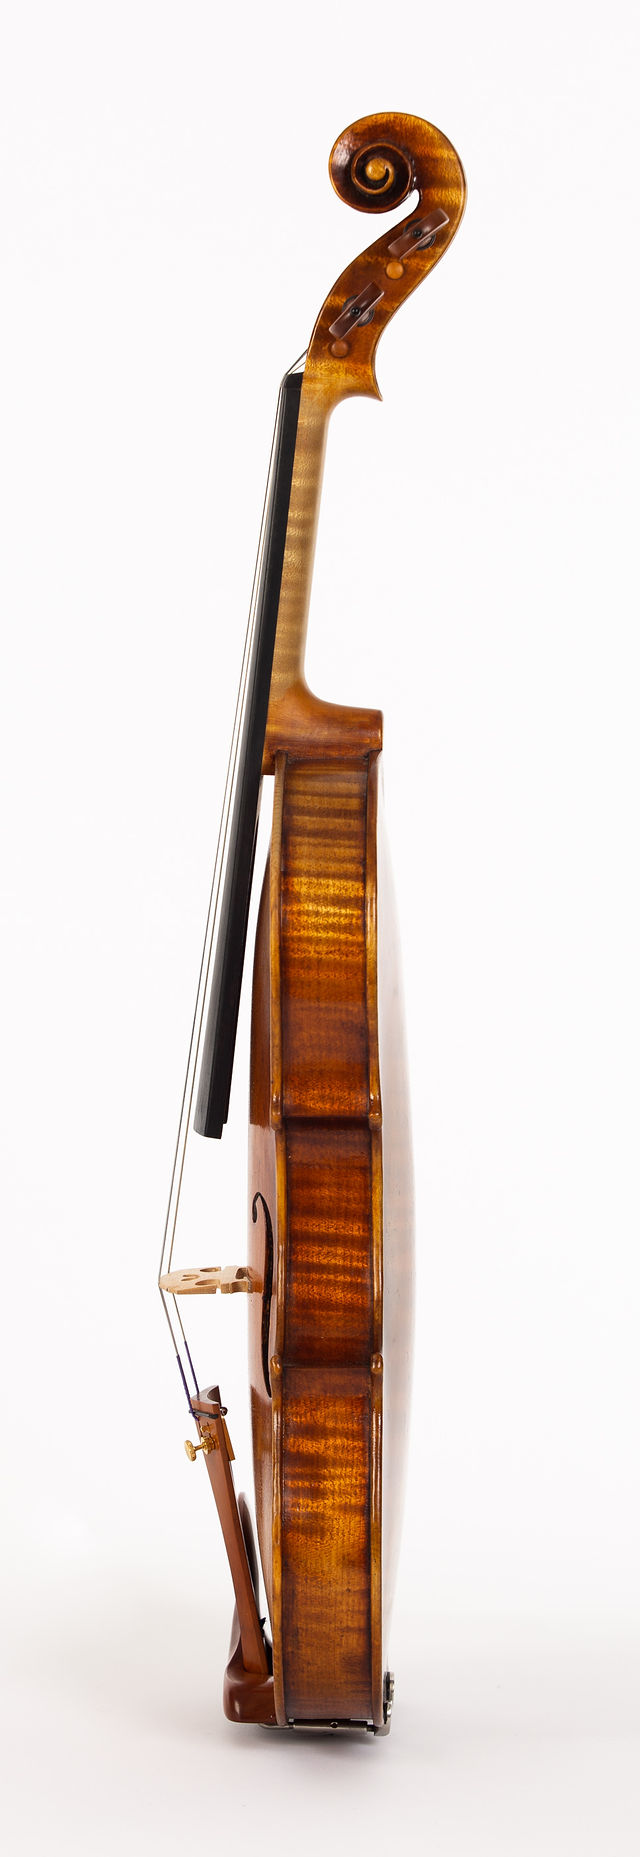 Starkie Strad model violin 2018 side.jpg